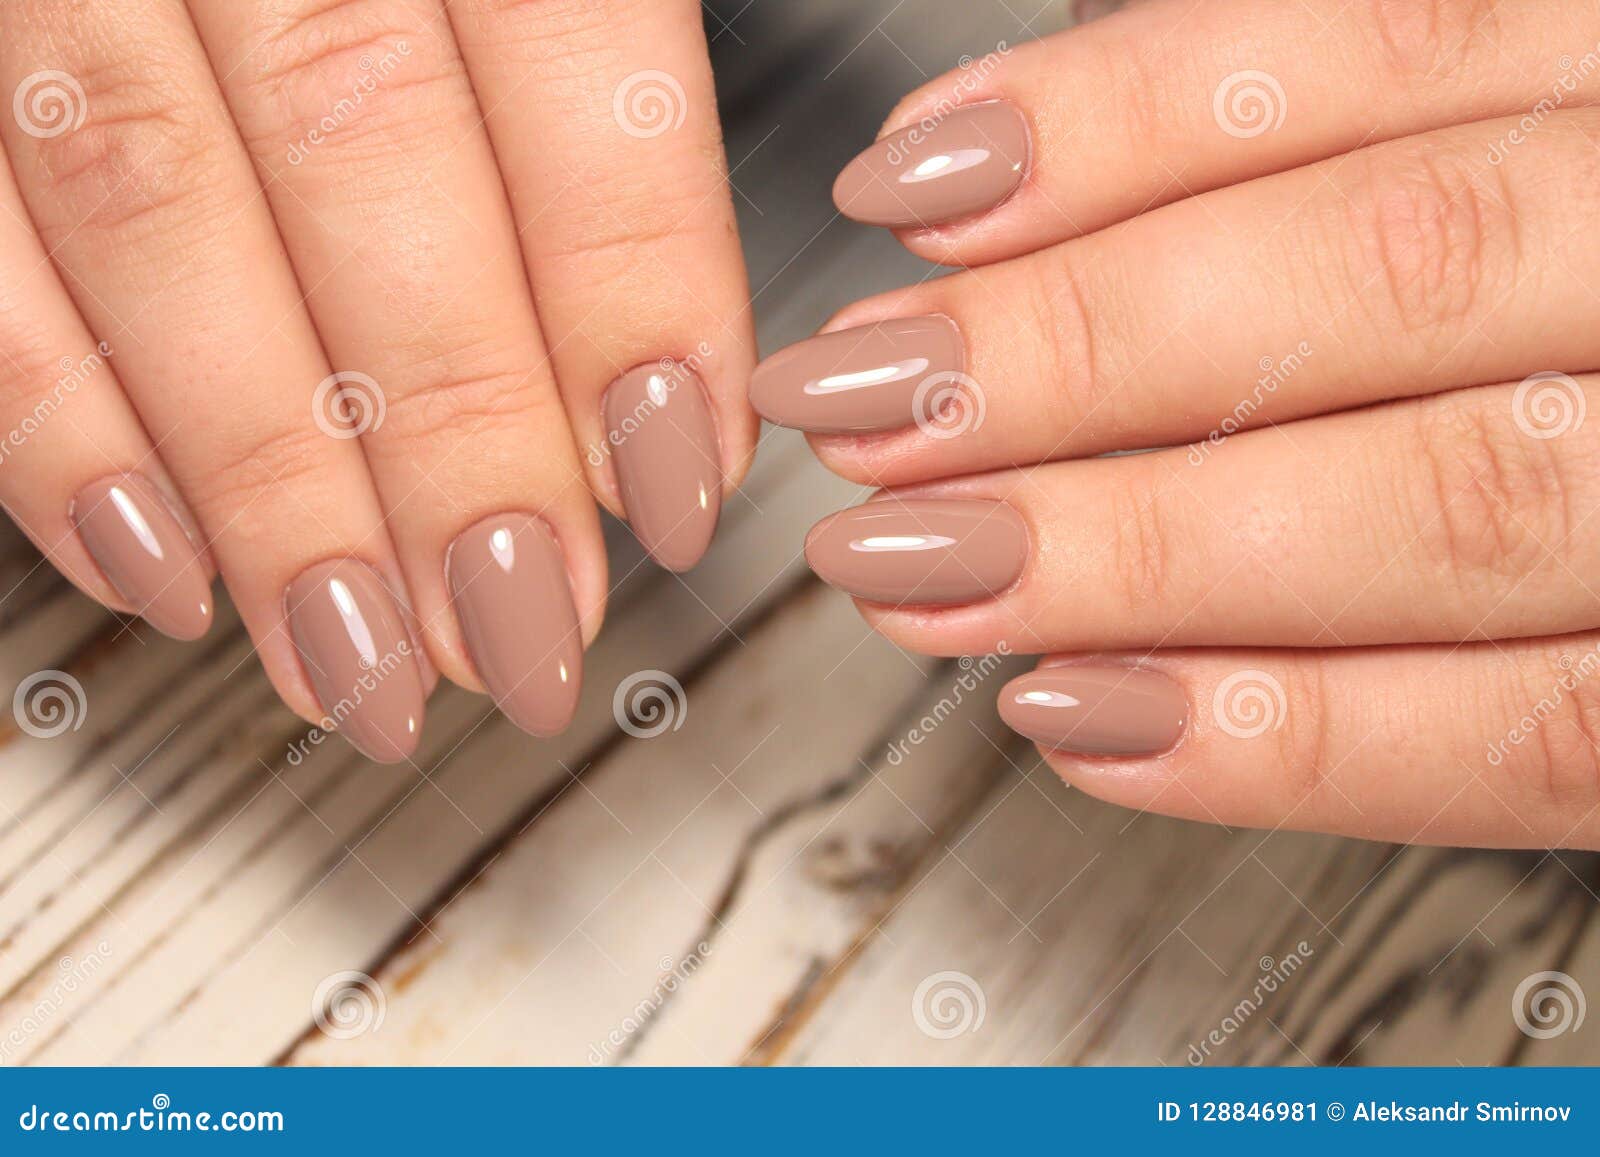 Manicured Nails Nail Polish Art Design Best Stock Image Image Of